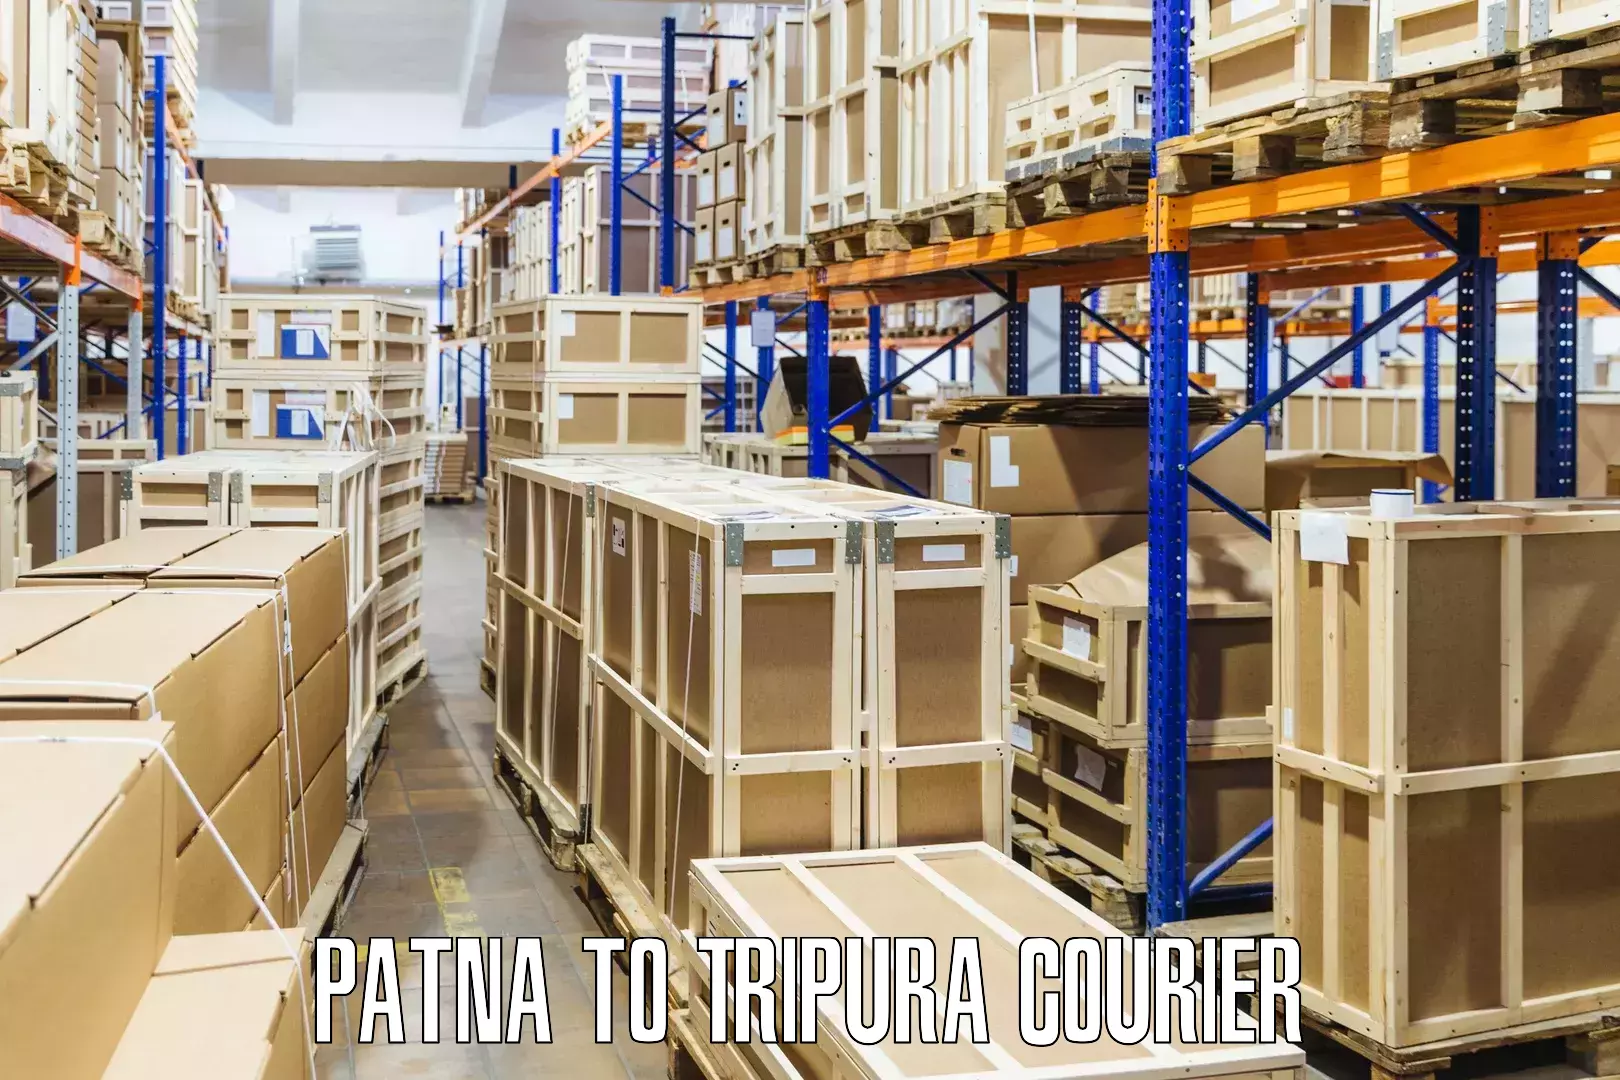 Reliable parcel services Patna to Manu Bazar